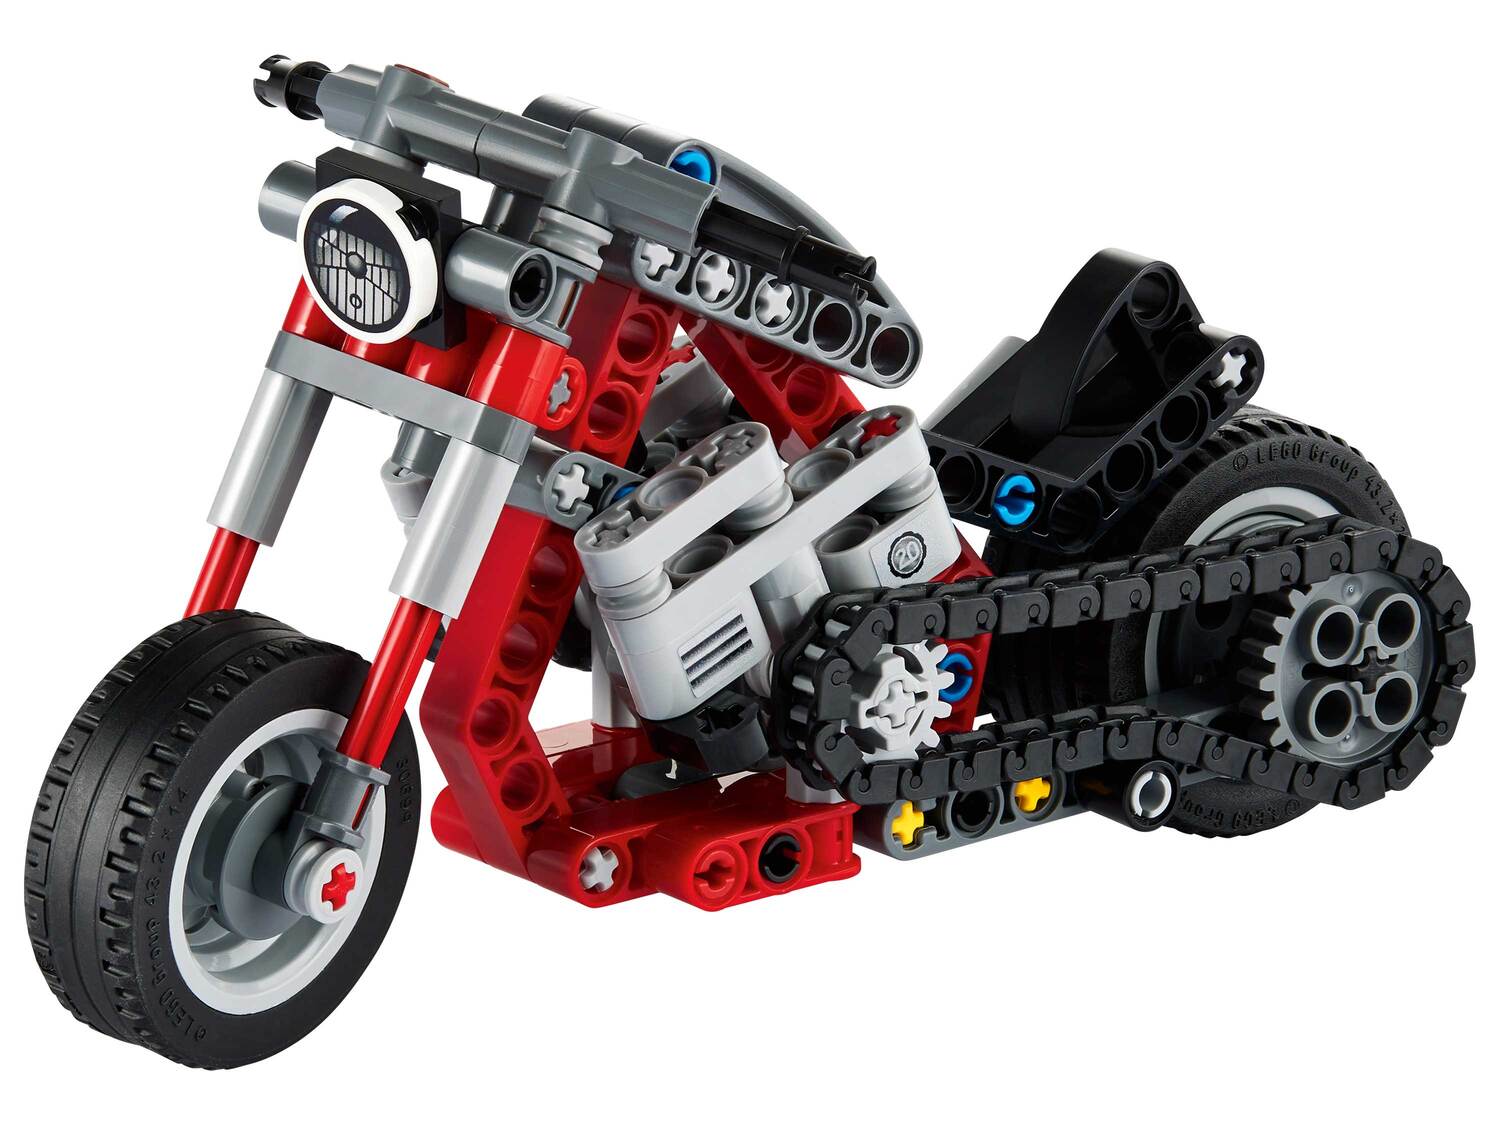 Jeu de construction petit modèle , le prix 6.99 € 
- Au choix :
- Lego Creator ...